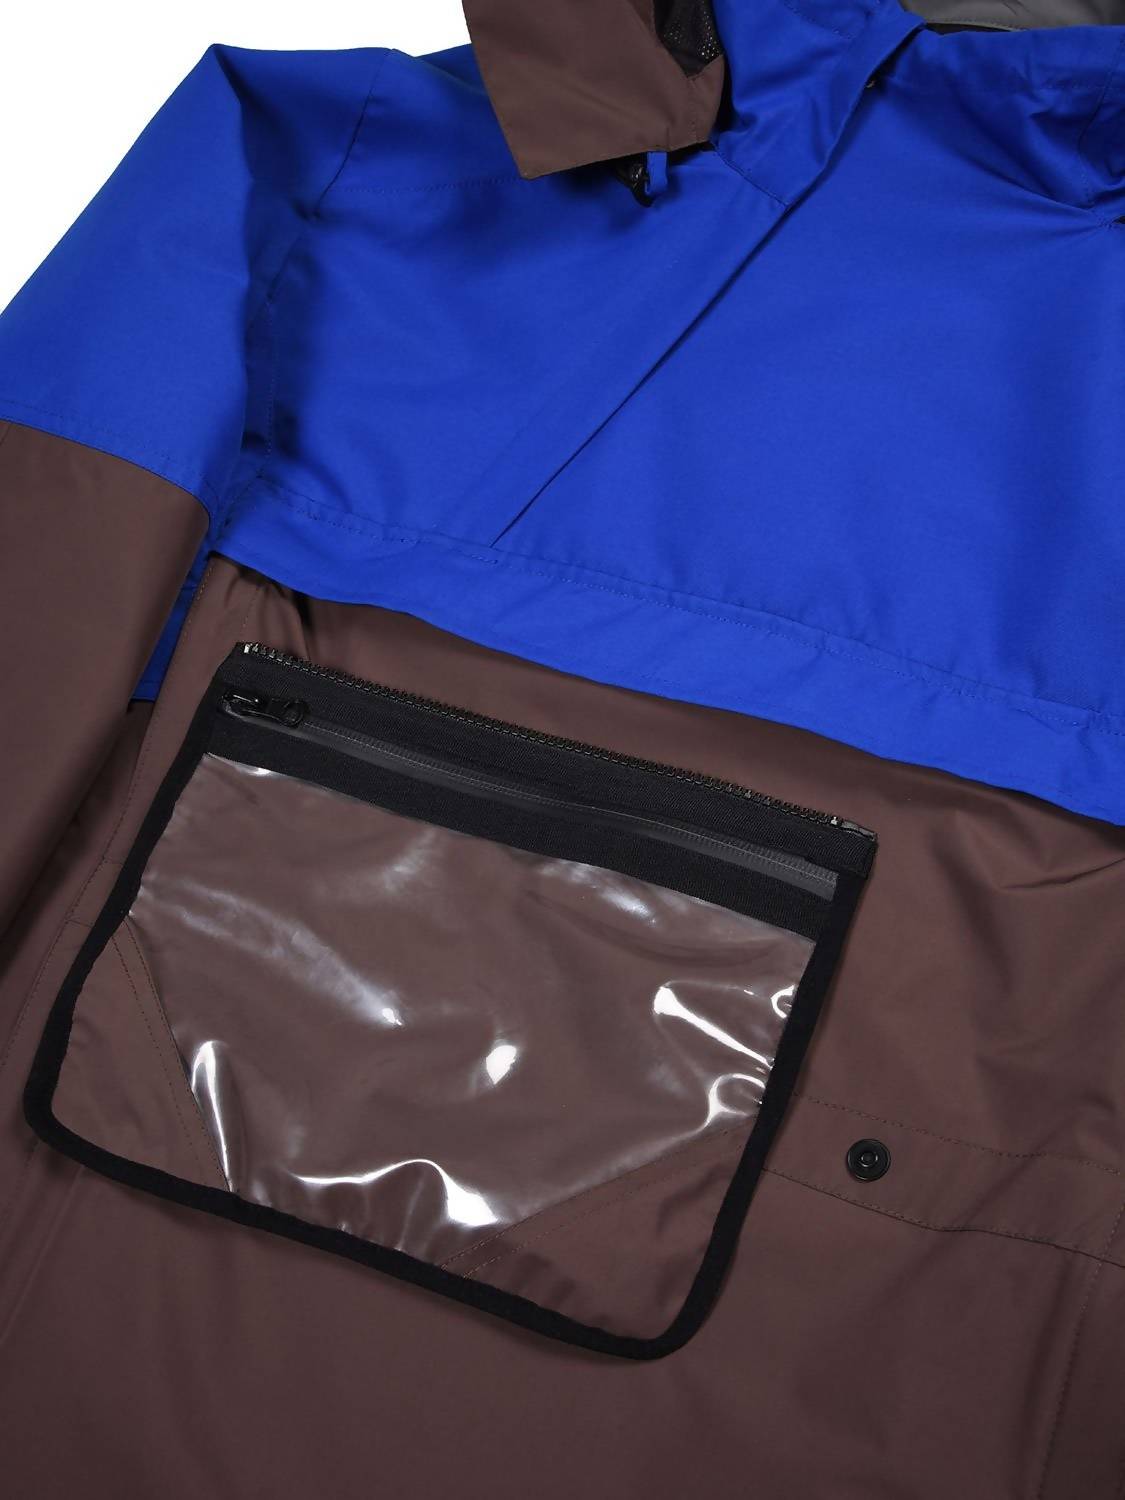 Make Fall Shidday Waterproof Jacket